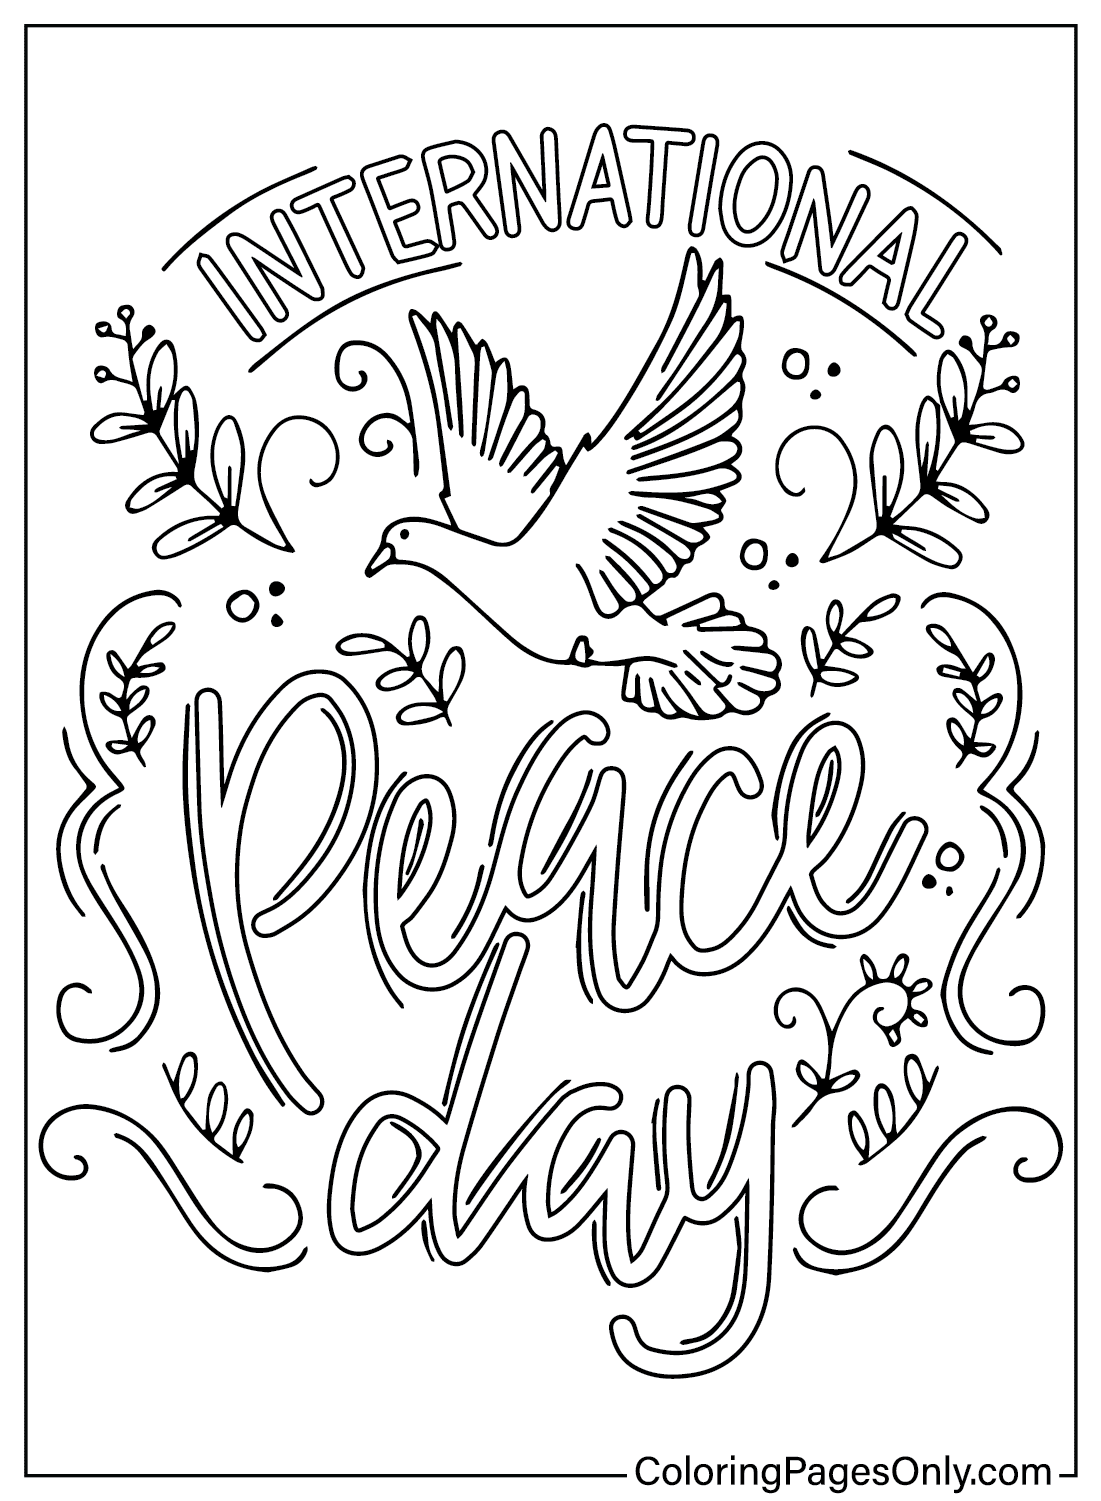 Farbseite zum Internationalen Tag des Friedens vom Internationalen Tag des Friedens